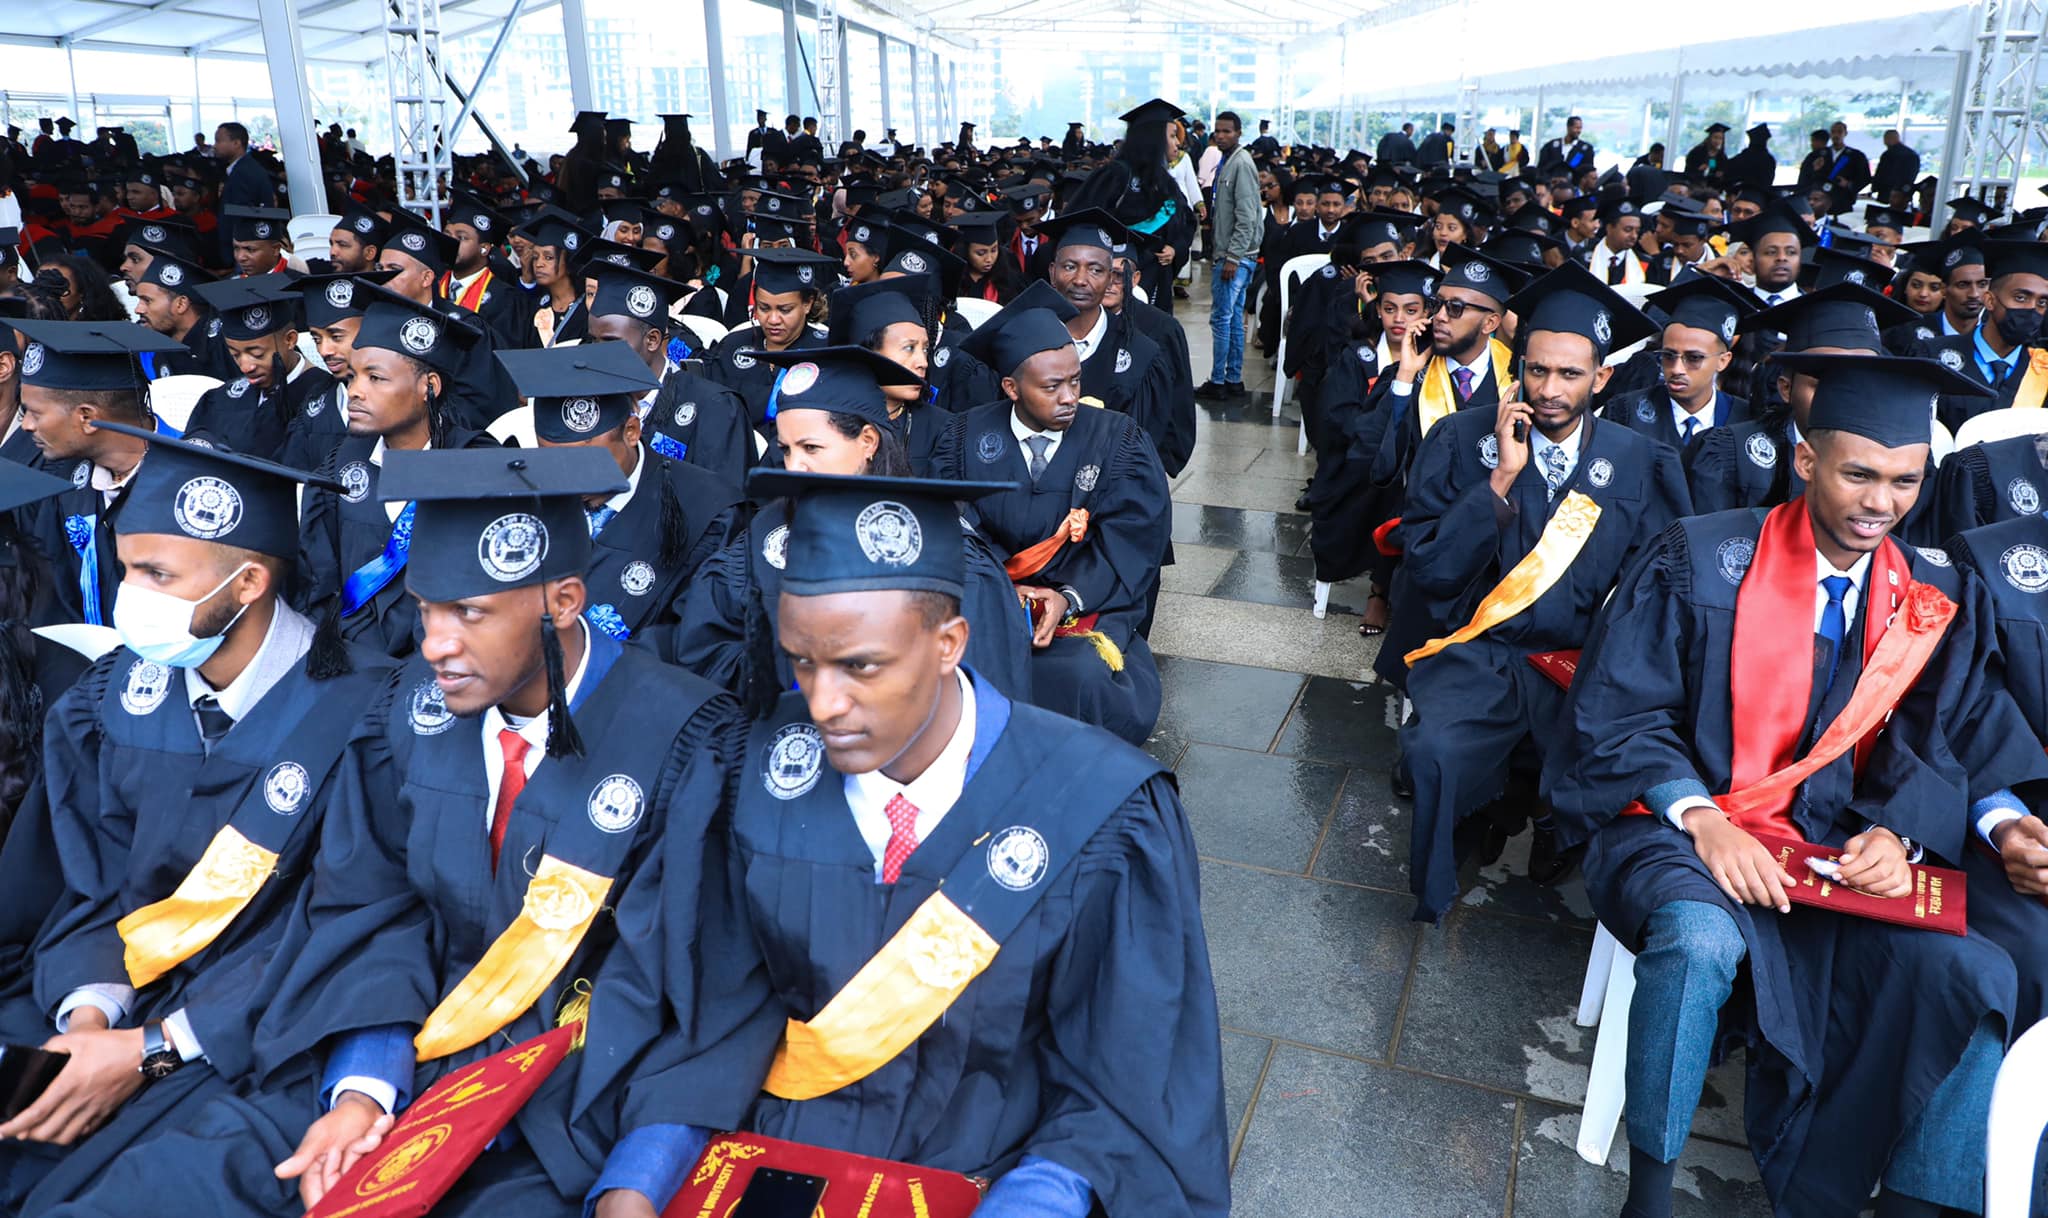 Addis Ababa University Graduation Ceremony